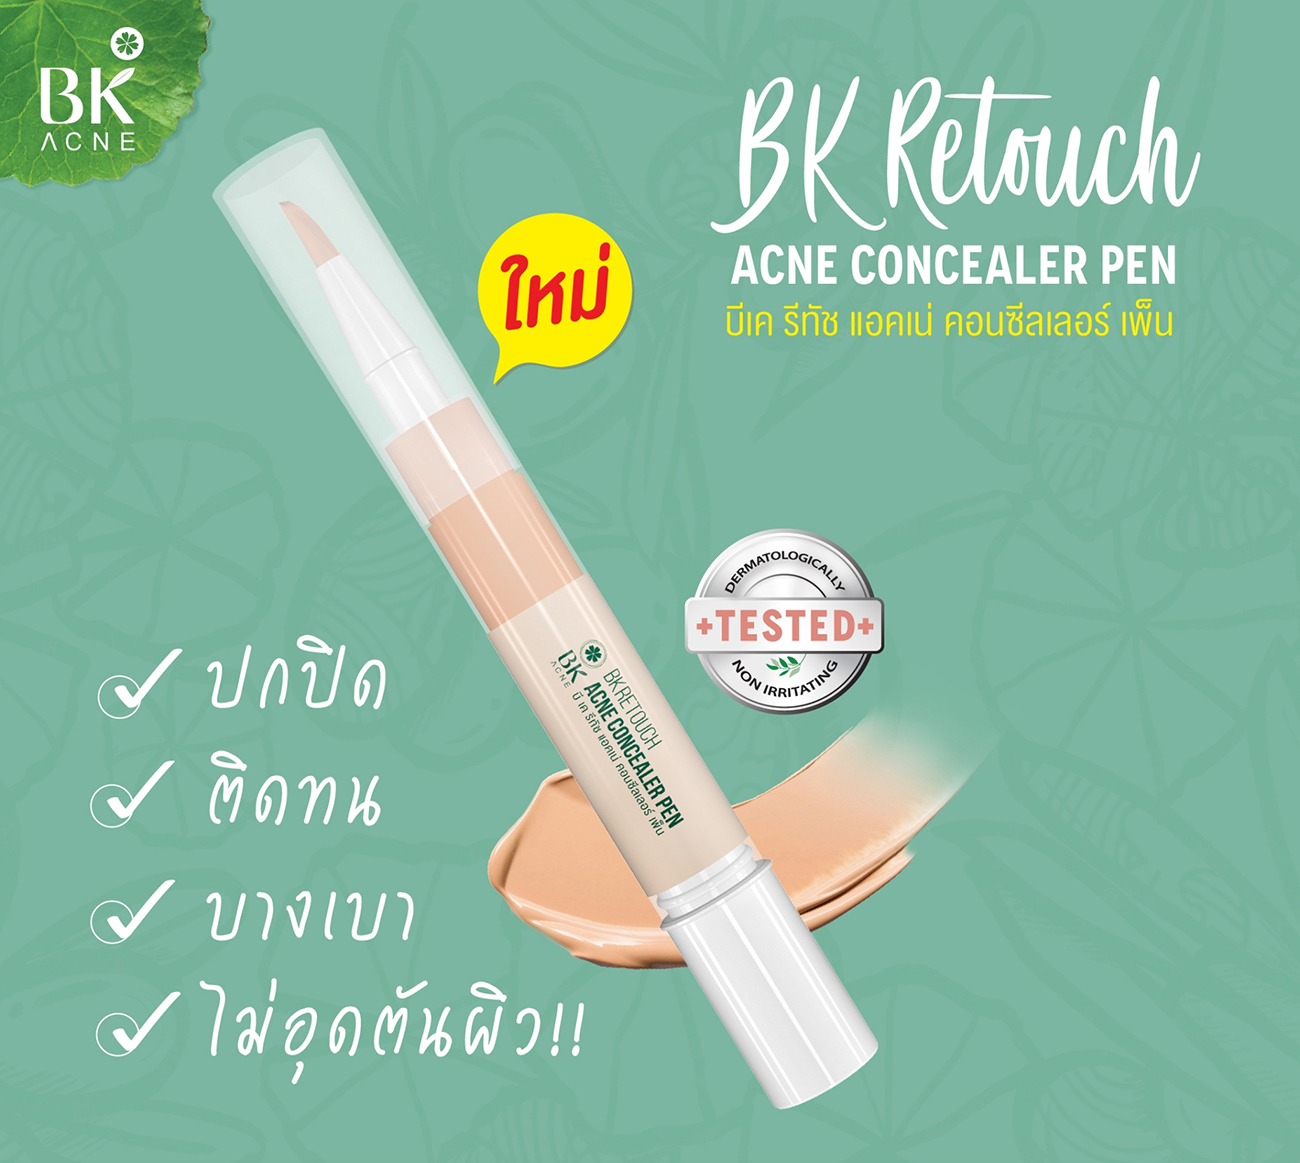 BK Retouch Acne Concealer Pen 4g